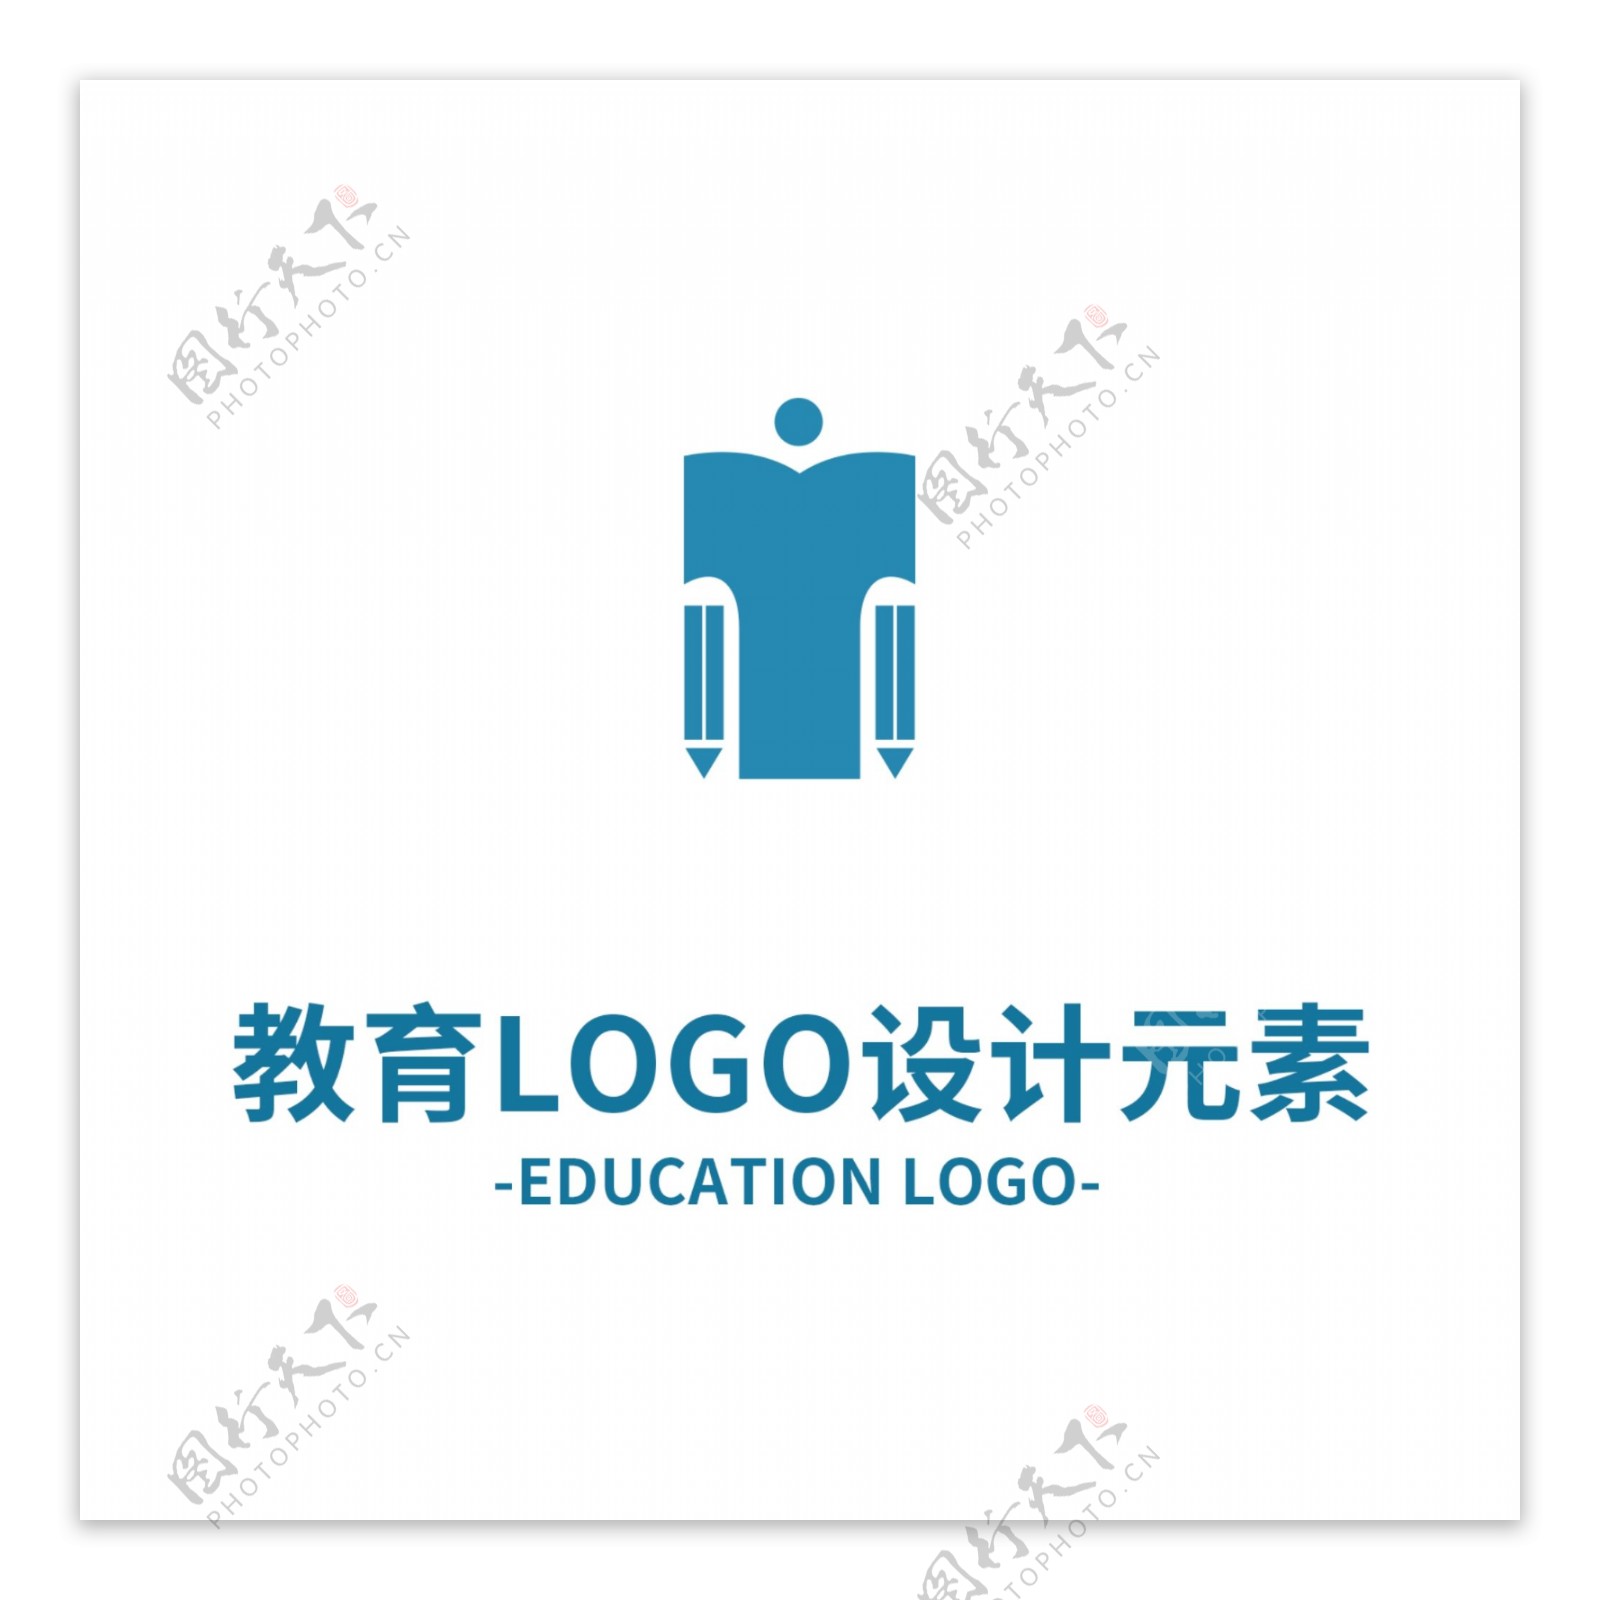 教育行业LOGO设计元素